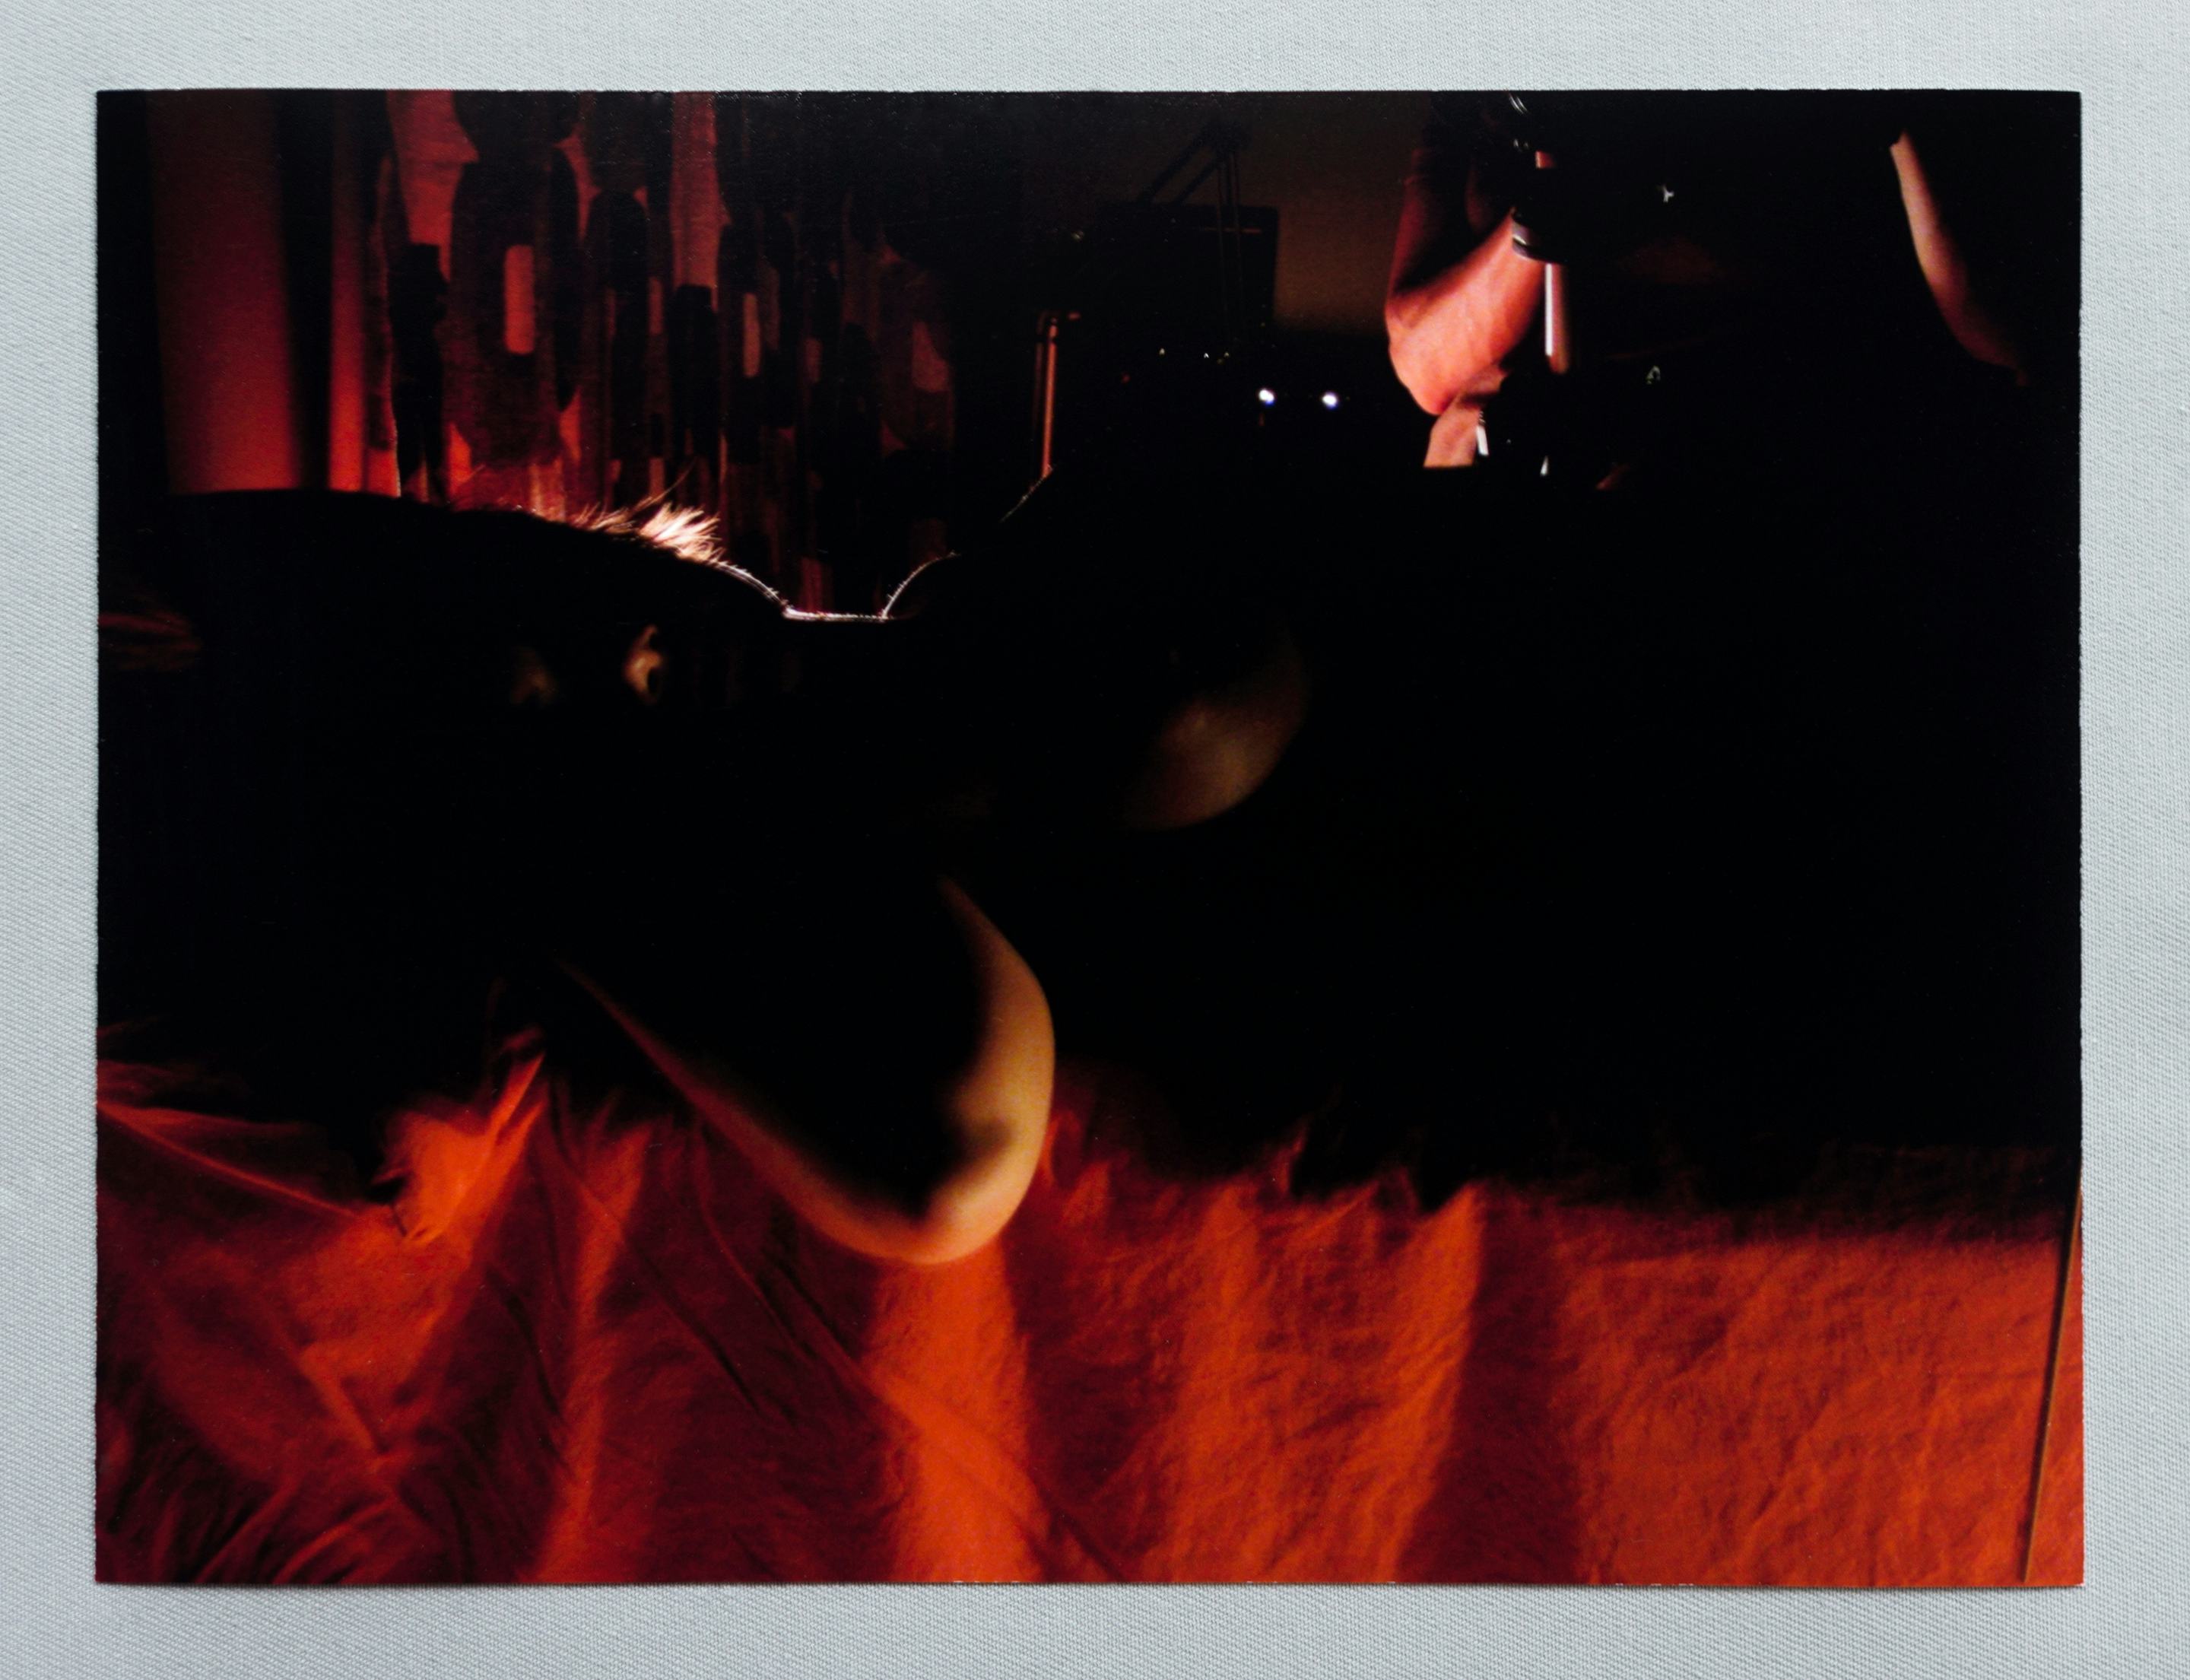 Monica Majoli - Primary Materials for Black Mirror (2009 - 2012). Archival pigment print. 7h x 10w inches.